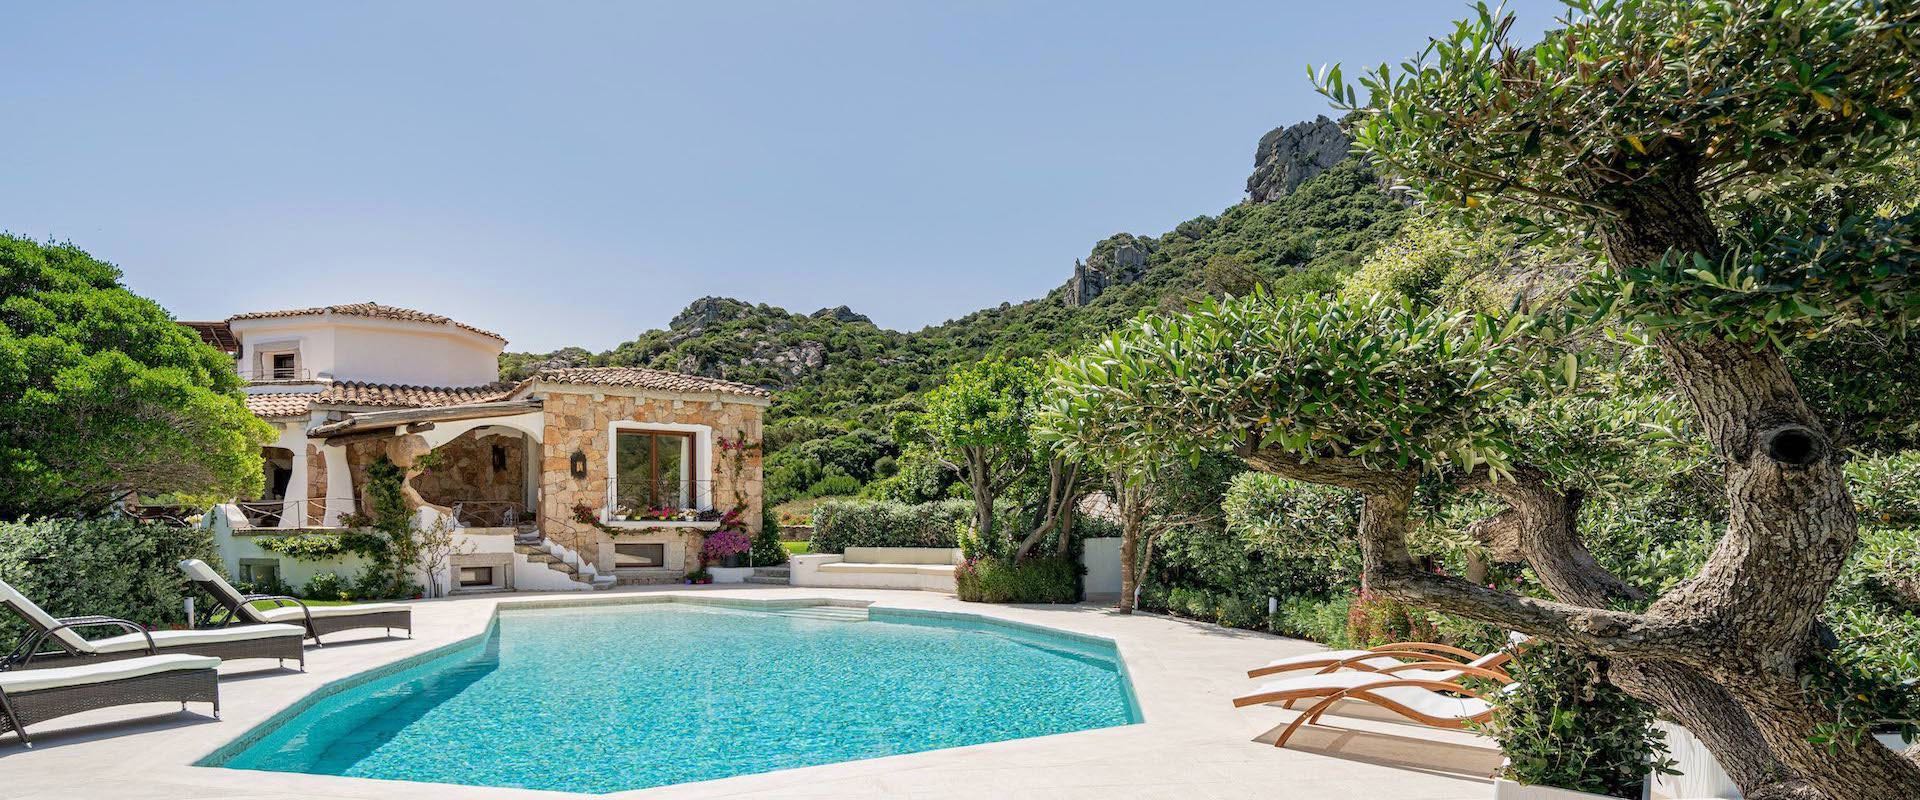 Villa Giorgia's garden with pool.